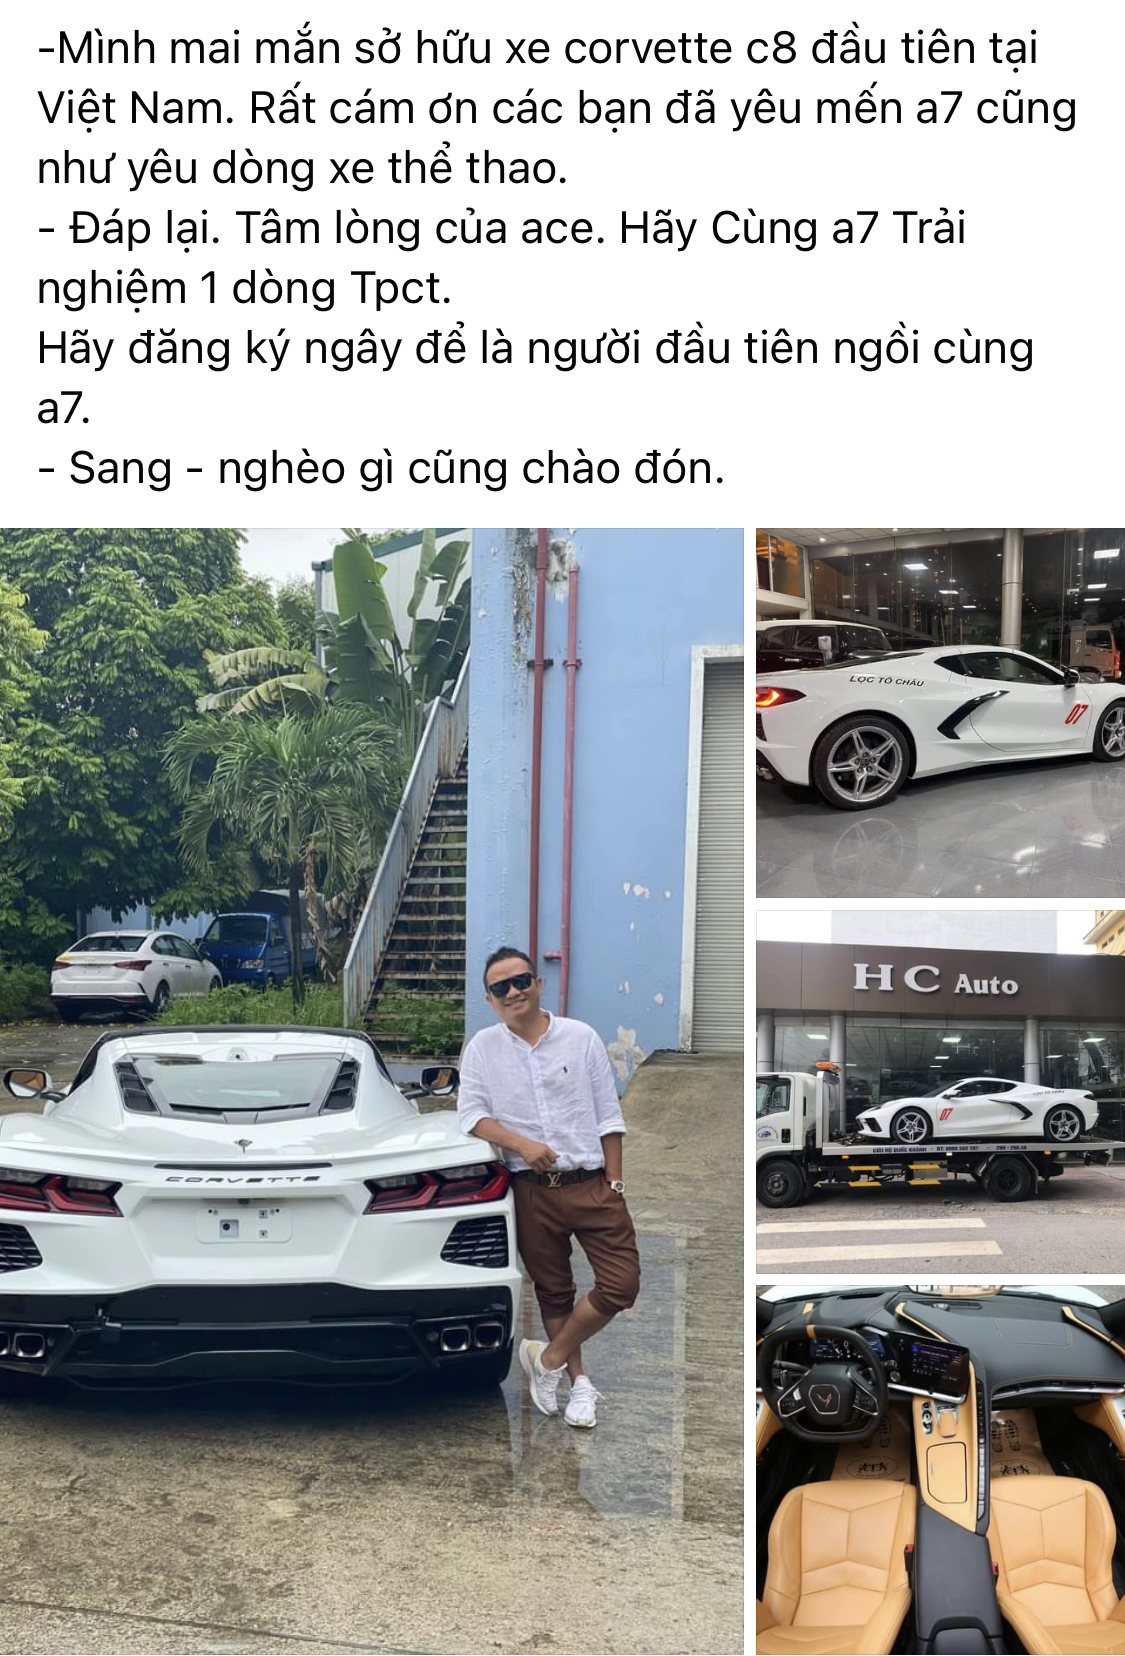 Doanh nhân Cần Thơ tậu Chevrolet Corvette C8 Stingray hơn 7 tỷ đồng đầu tiên tại Việt Nam - Ảnh 1.